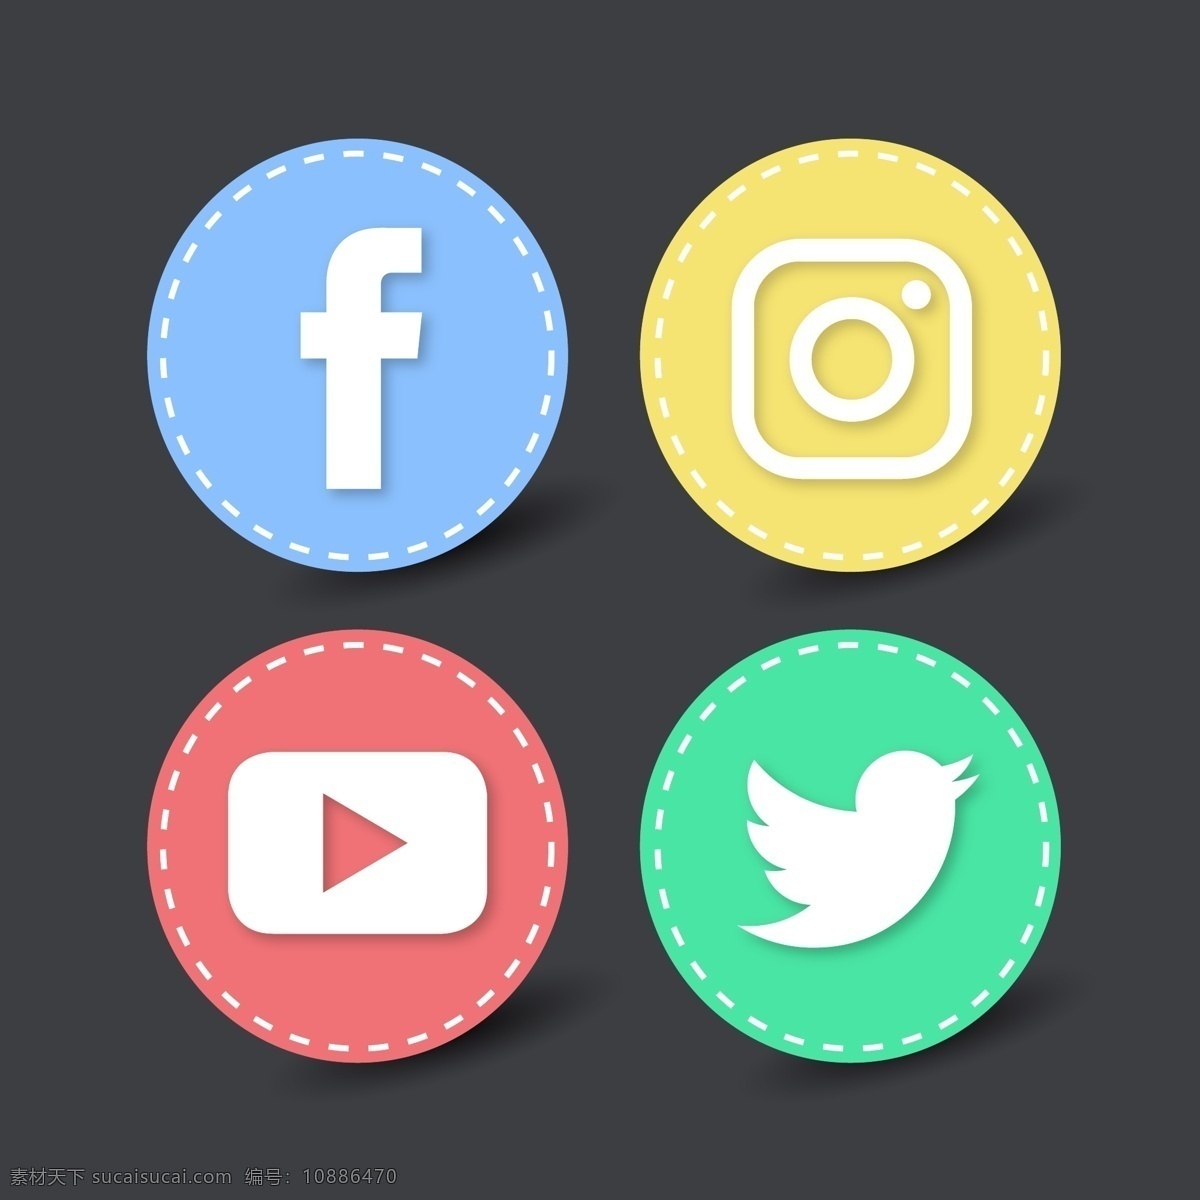 社交 网络 圆形 图标 logo 海报 脸谱网 instagram 布局 网页 互联网 数字 推特 youtube 媒体 数字媒体 媒体图标